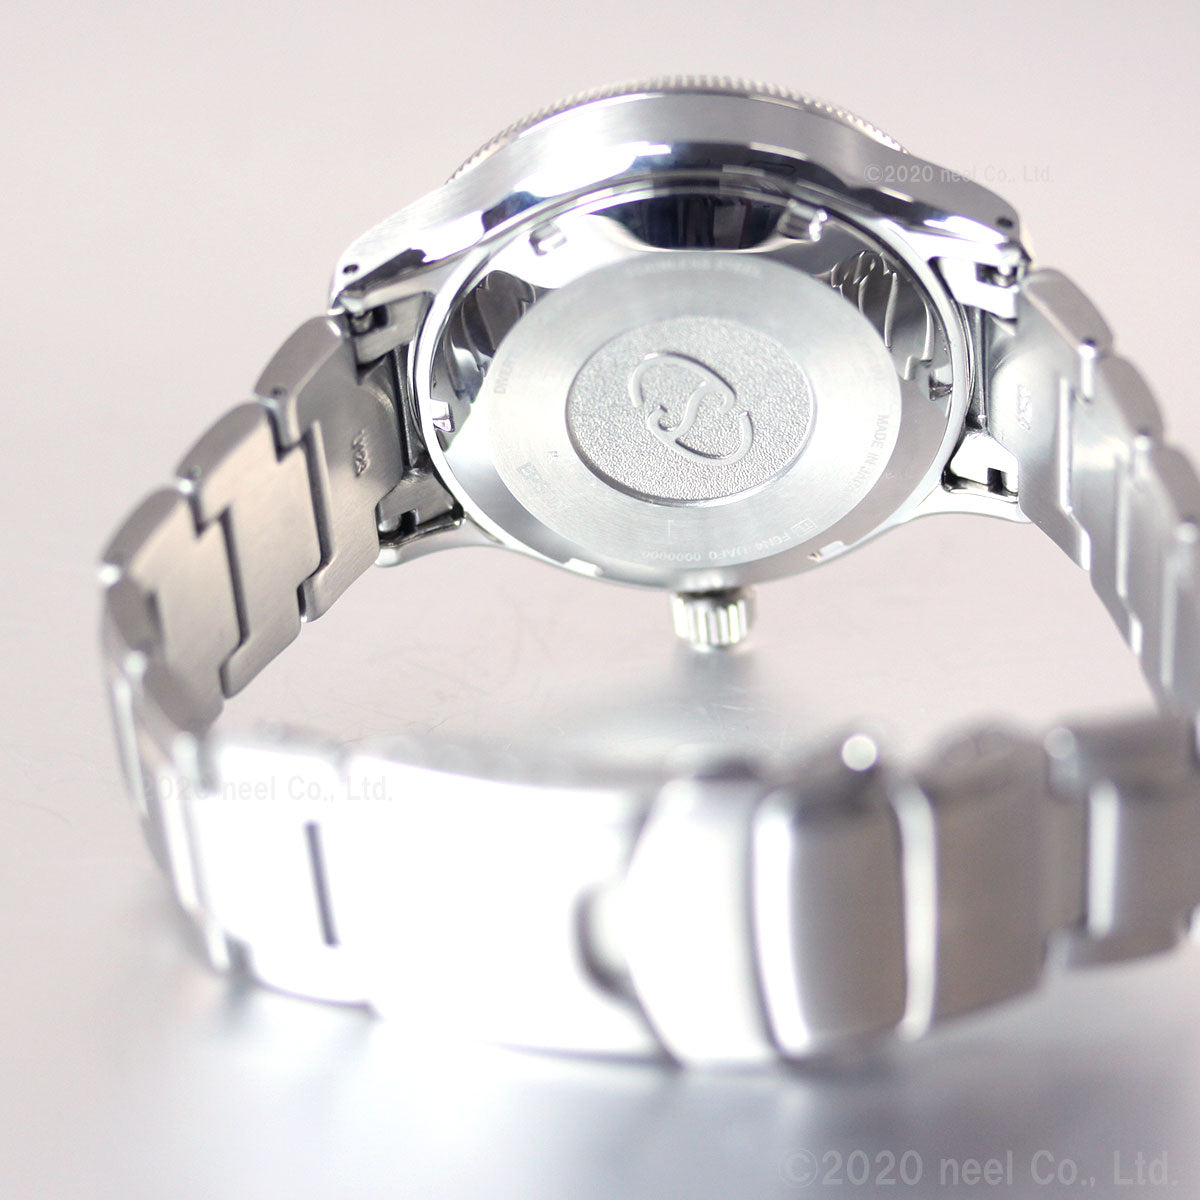 オリエントスター ダイバー 腕時計 メンズ 自動巻き RK-AU0309B